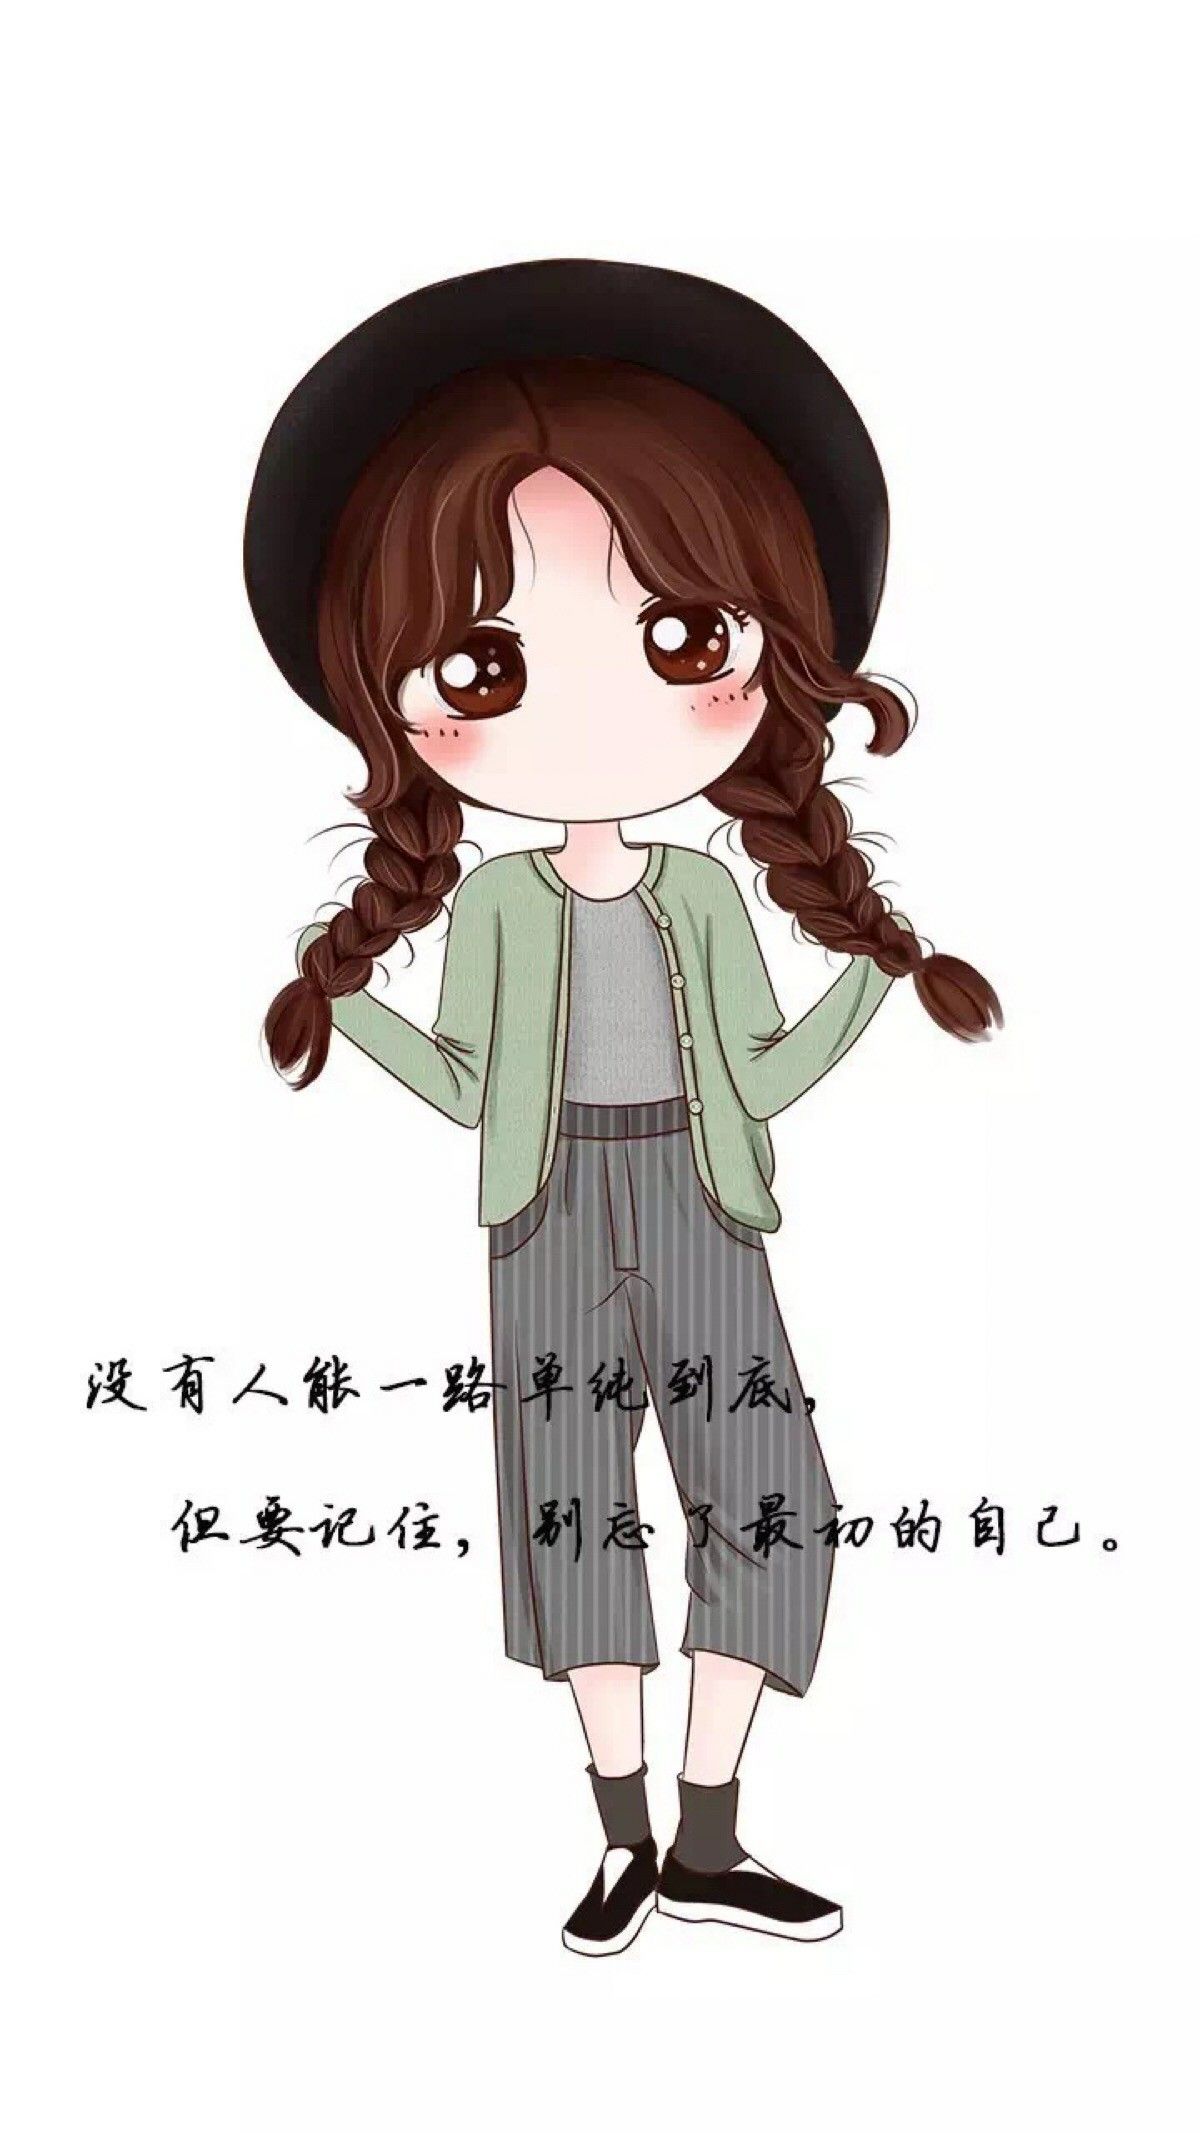 Hình ảnh anime Hàn Quốc cực xinh về cô gái tóc nâu thắt bím